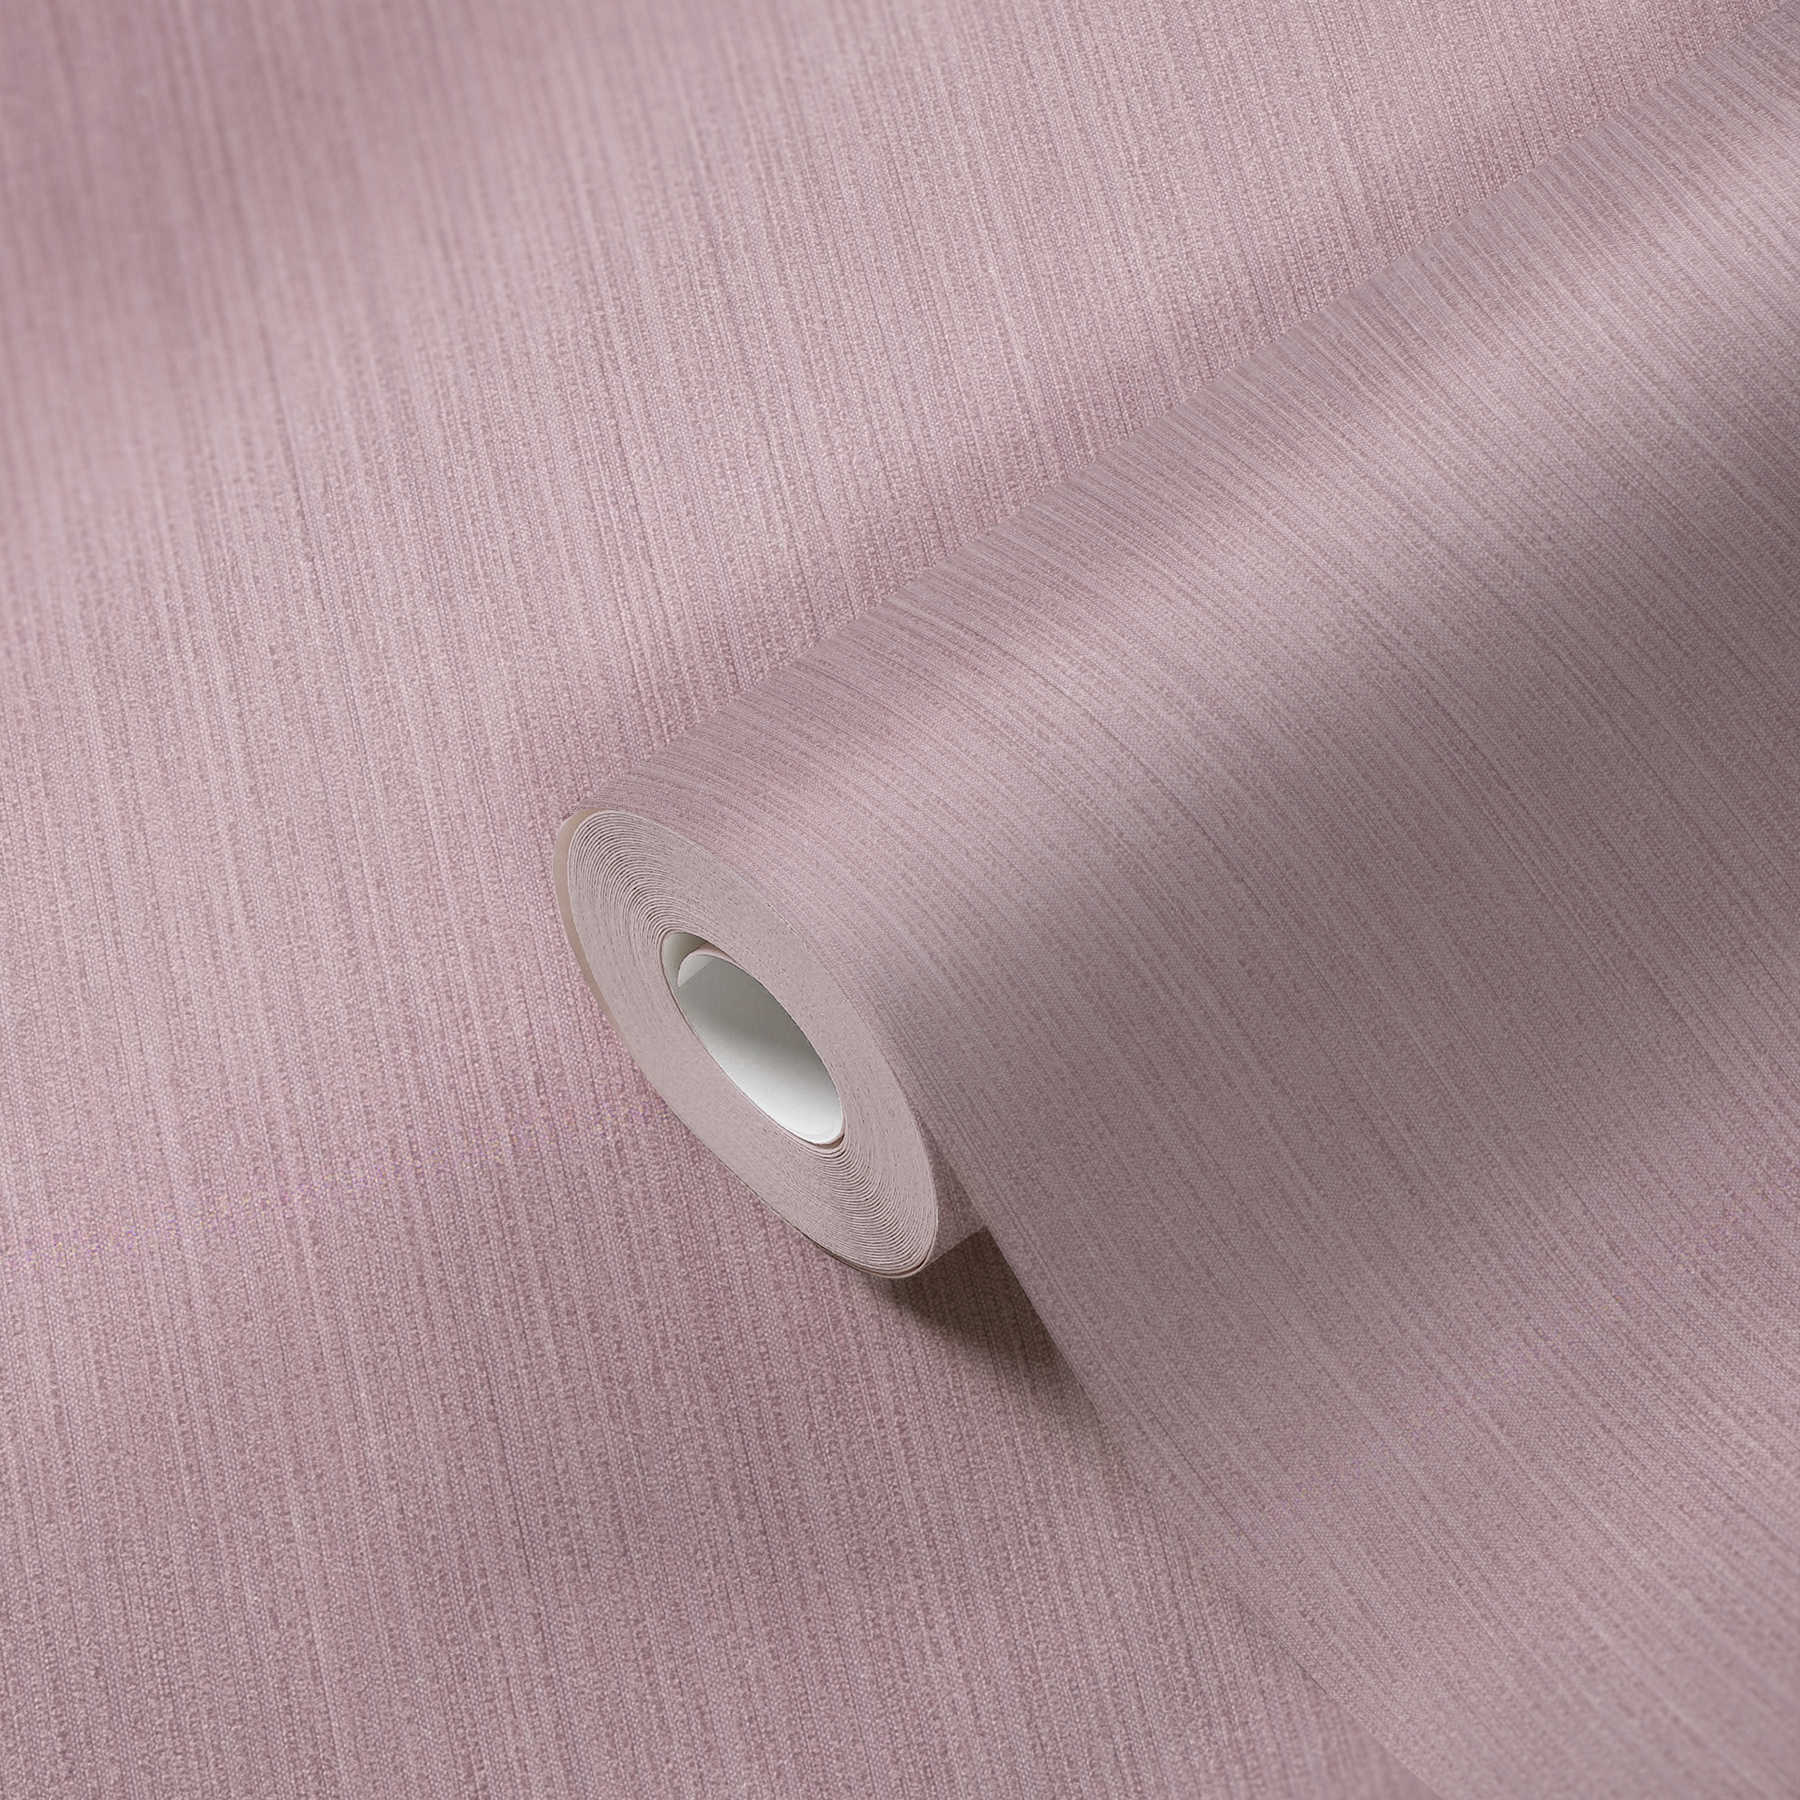             MICHALSKY behangpapier met structuurpatroon - paars, roze
        